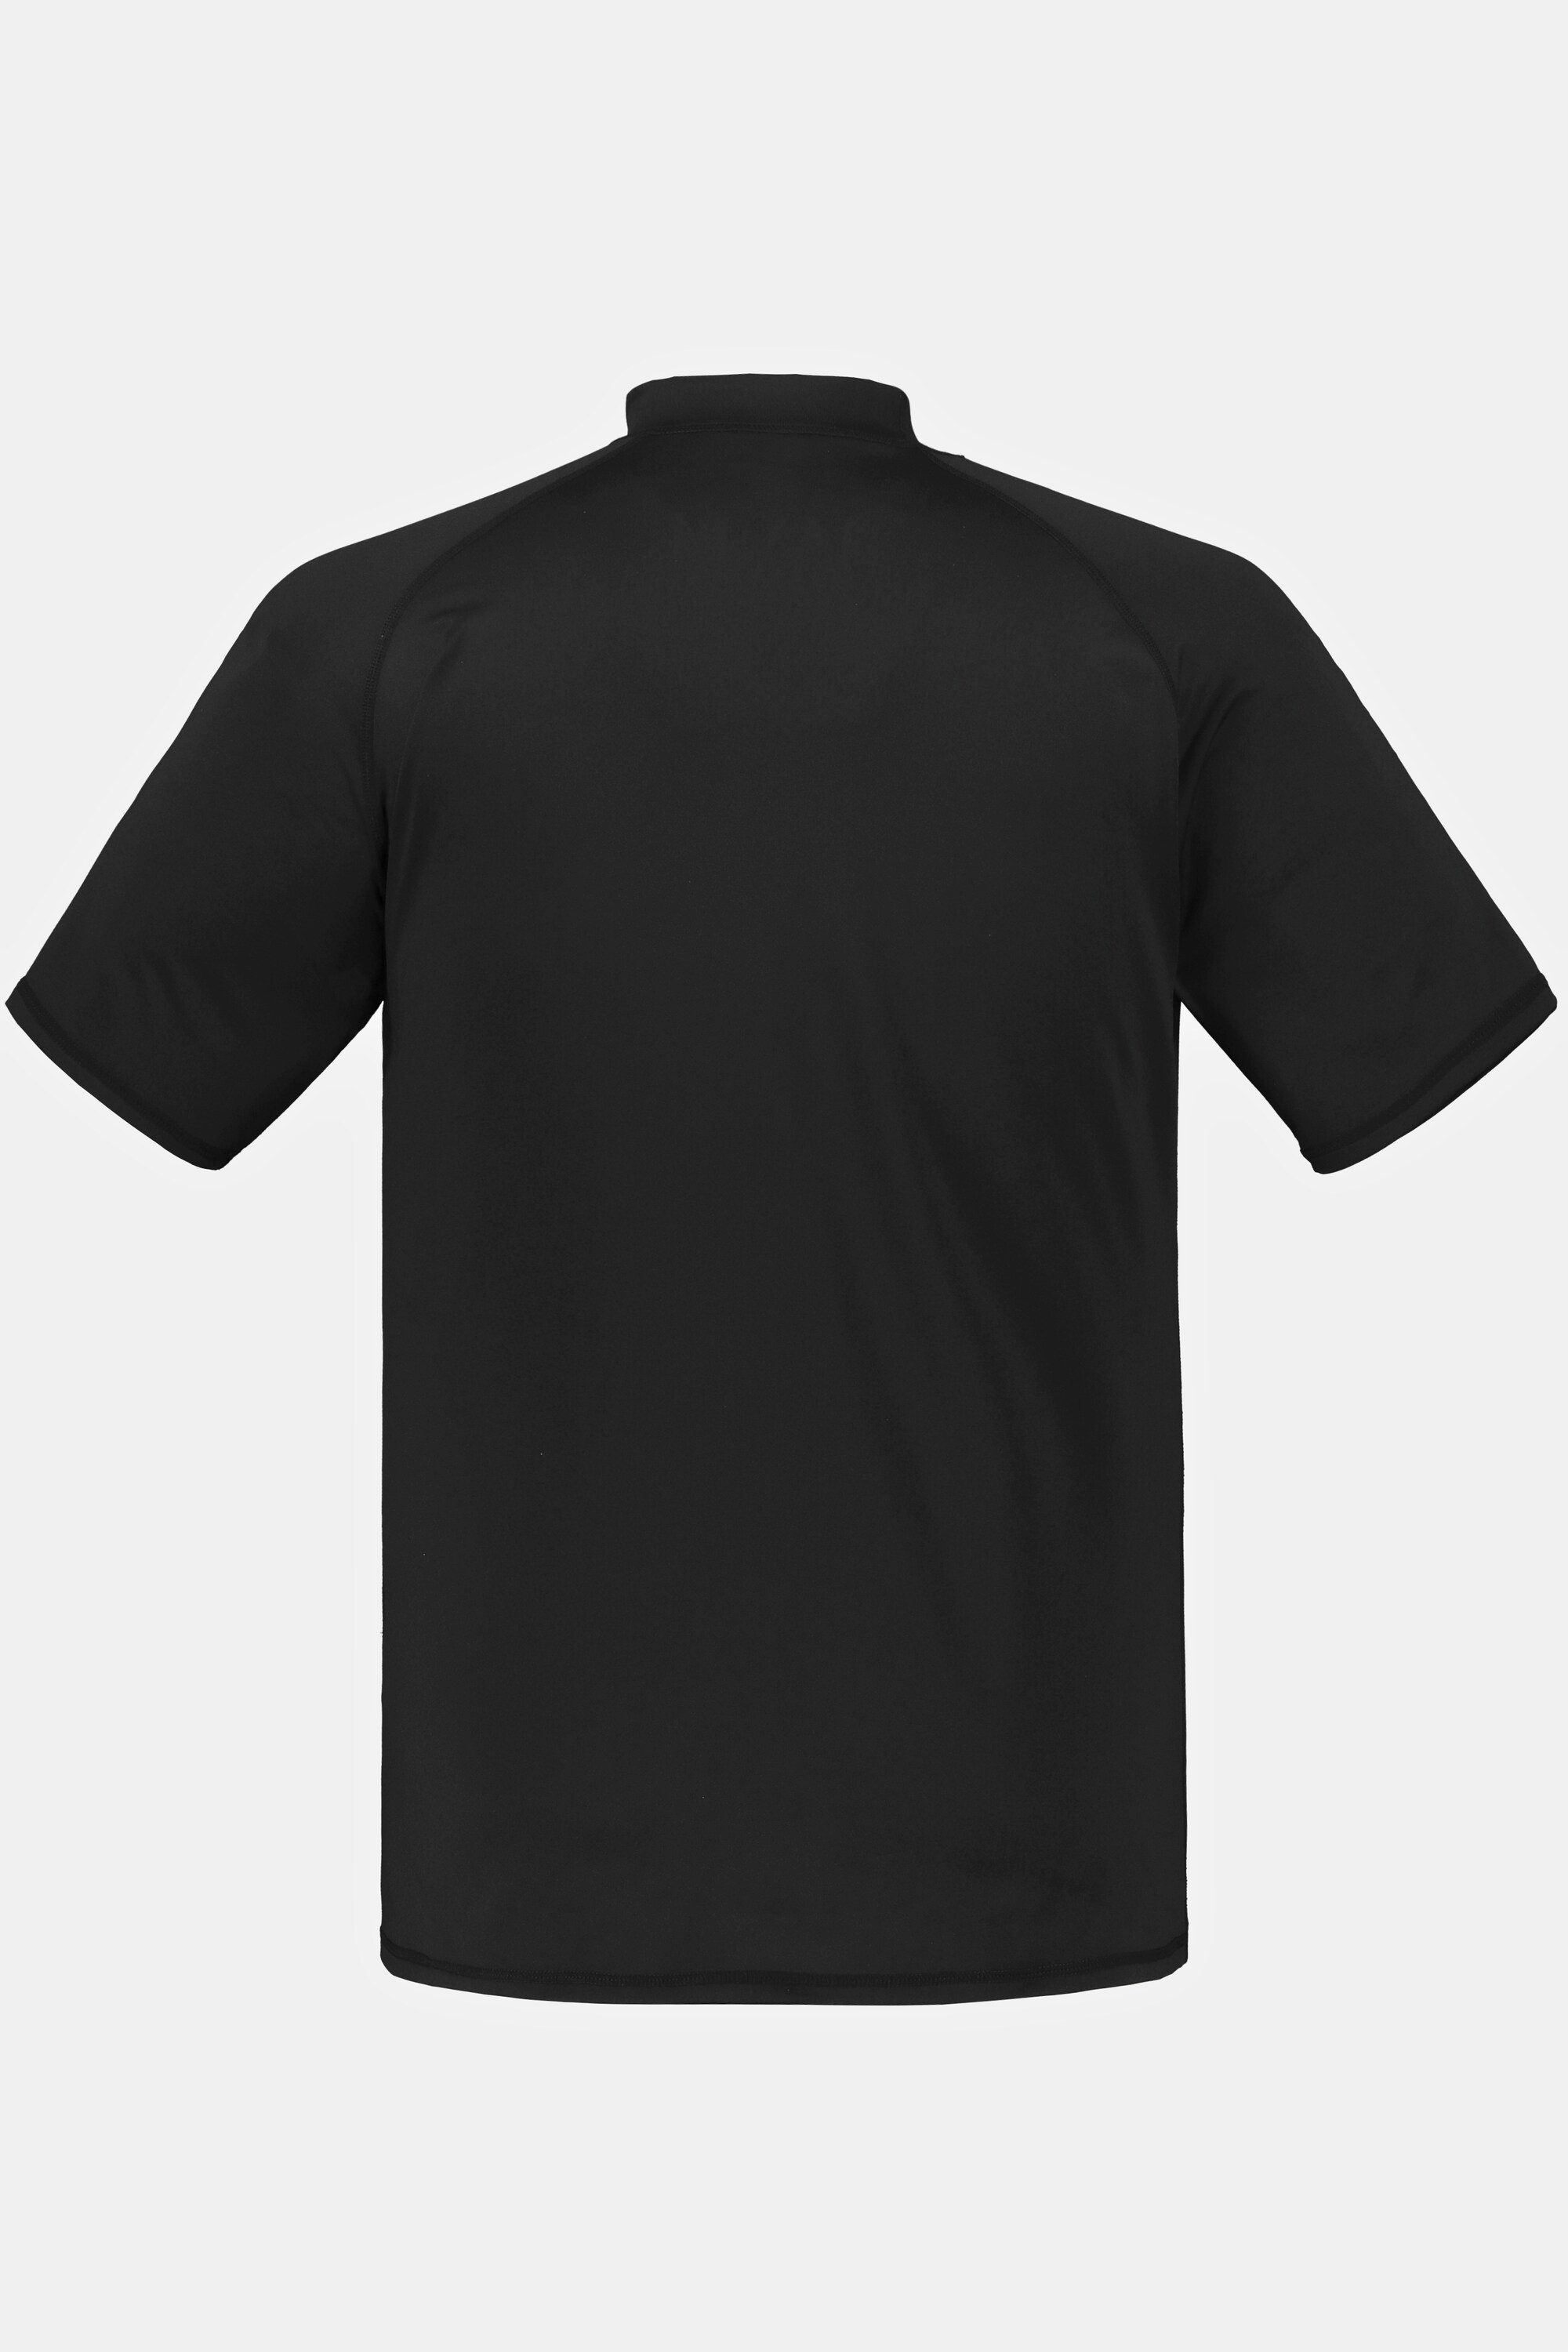 Stehkragen T-Shirt Halbarm schwarz Schwimmshirt JP1880 UV-Schutz